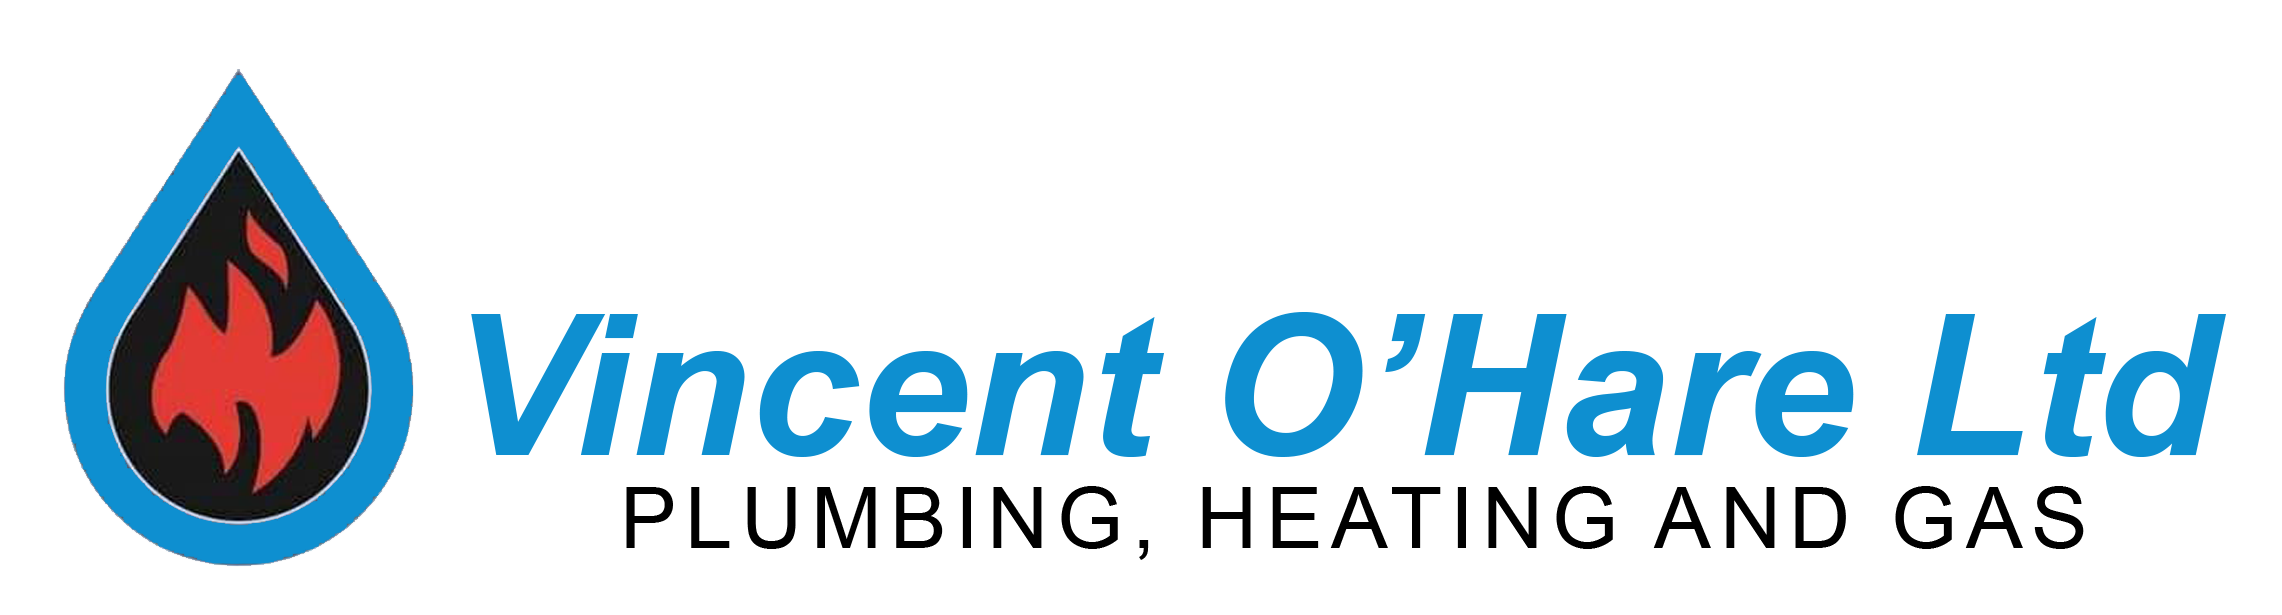 Vincent O Hare Ltd logo